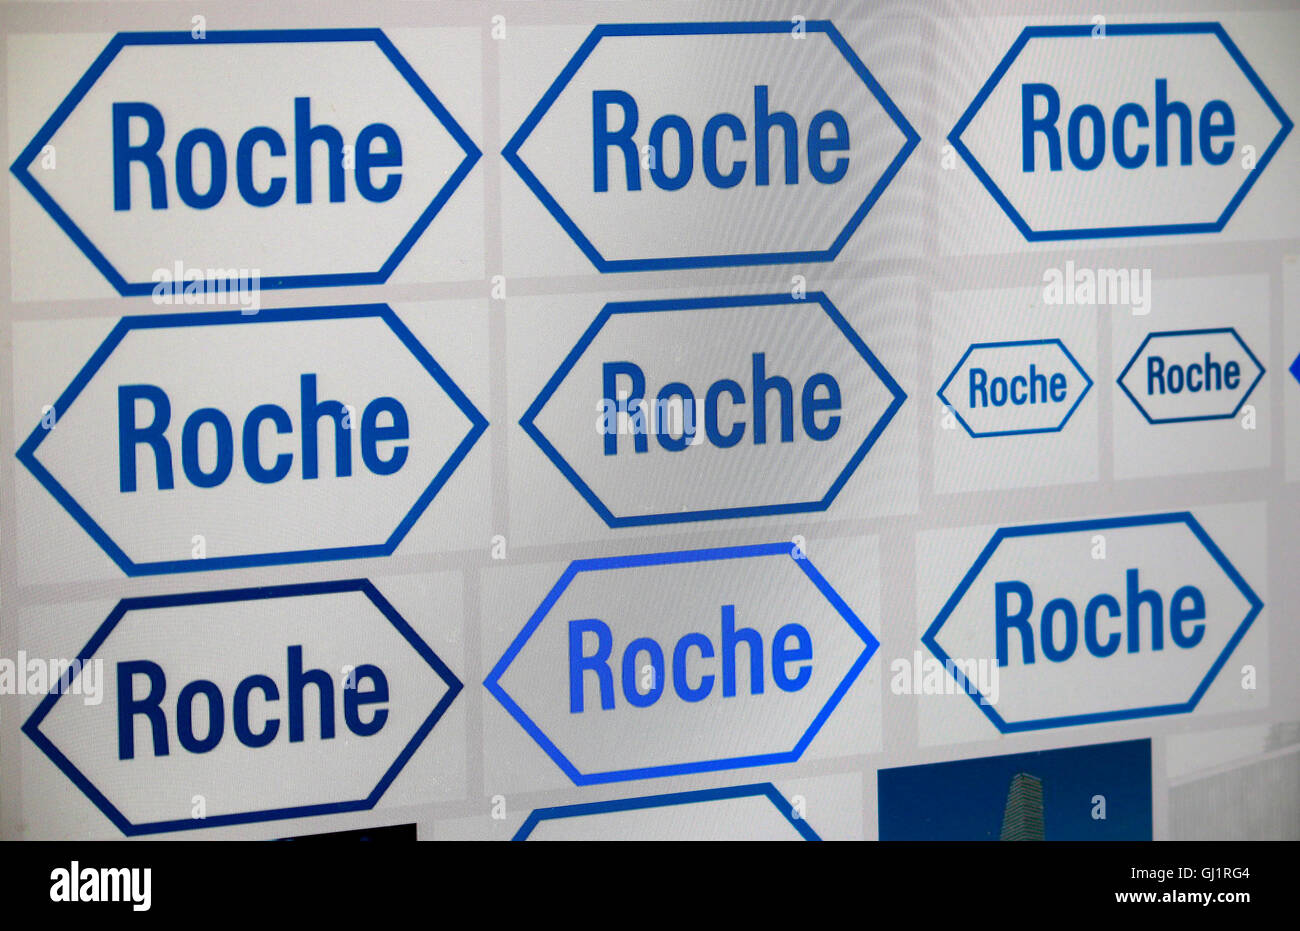 Loge der Marke "Roche", Berlino. Foto Stock